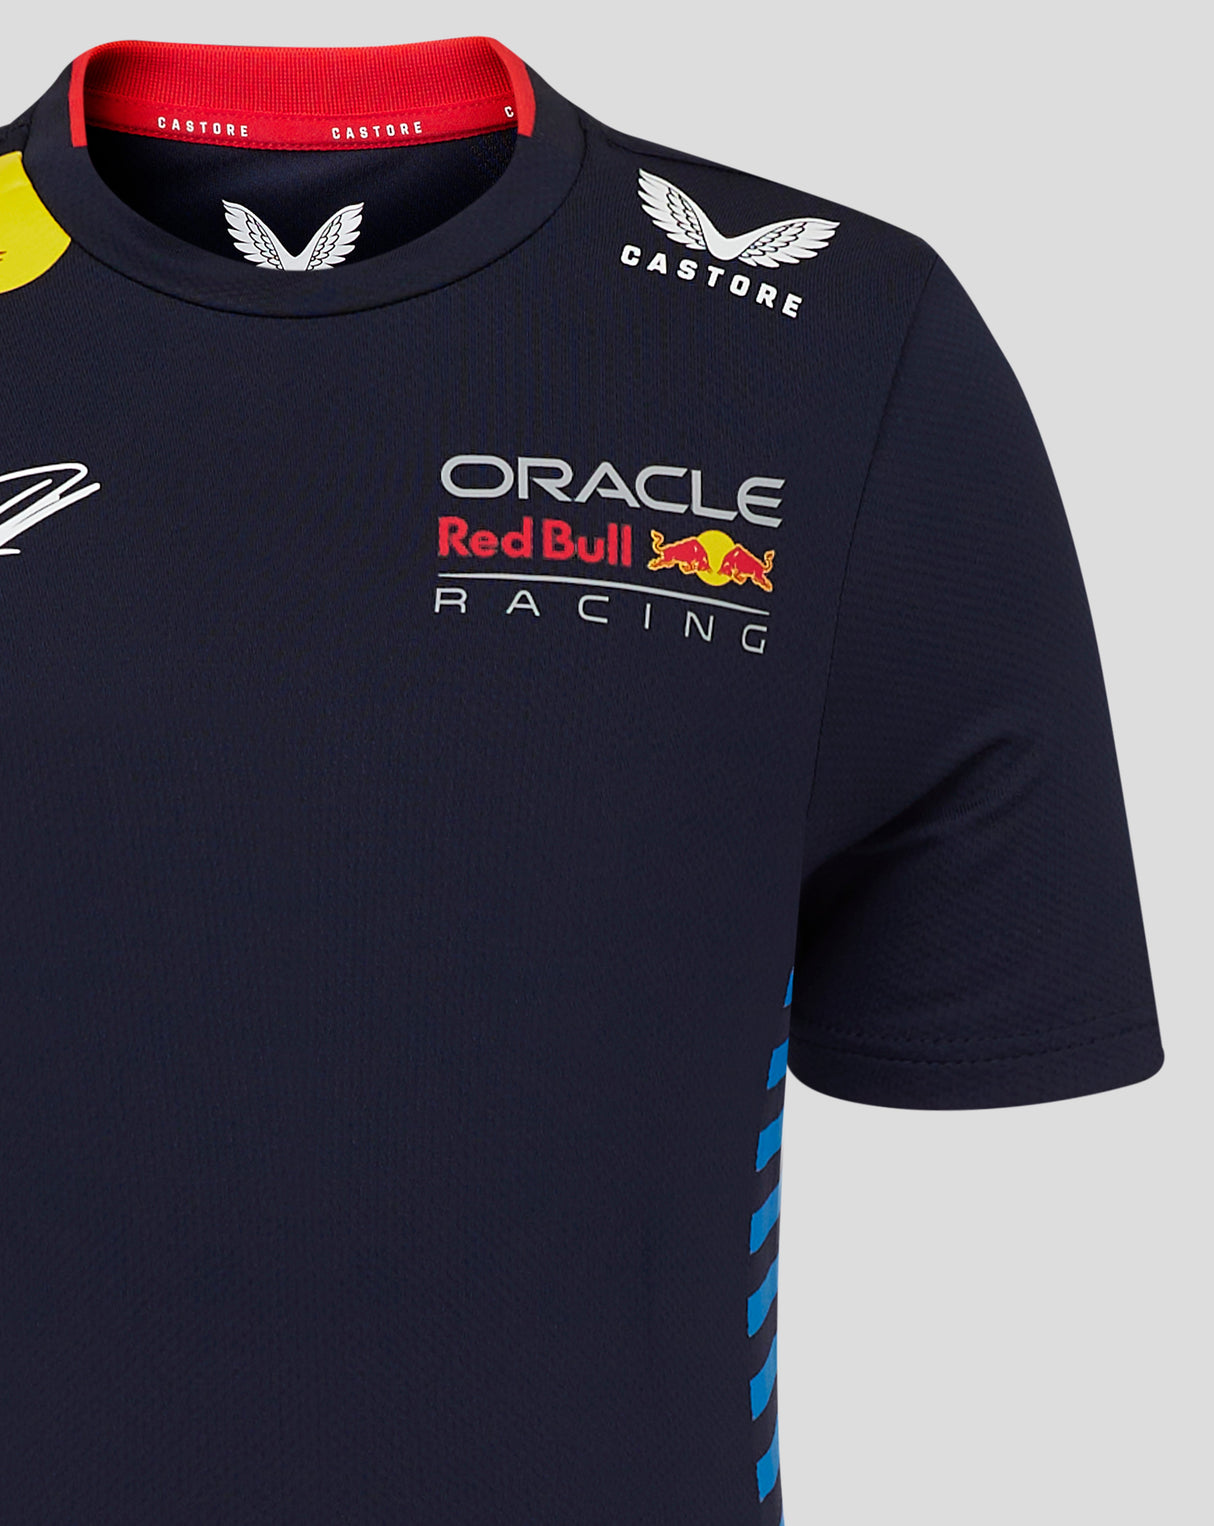 Red Bull tričko, Castore, Max Verstappen, dětské, modrá - FansBRANDS®